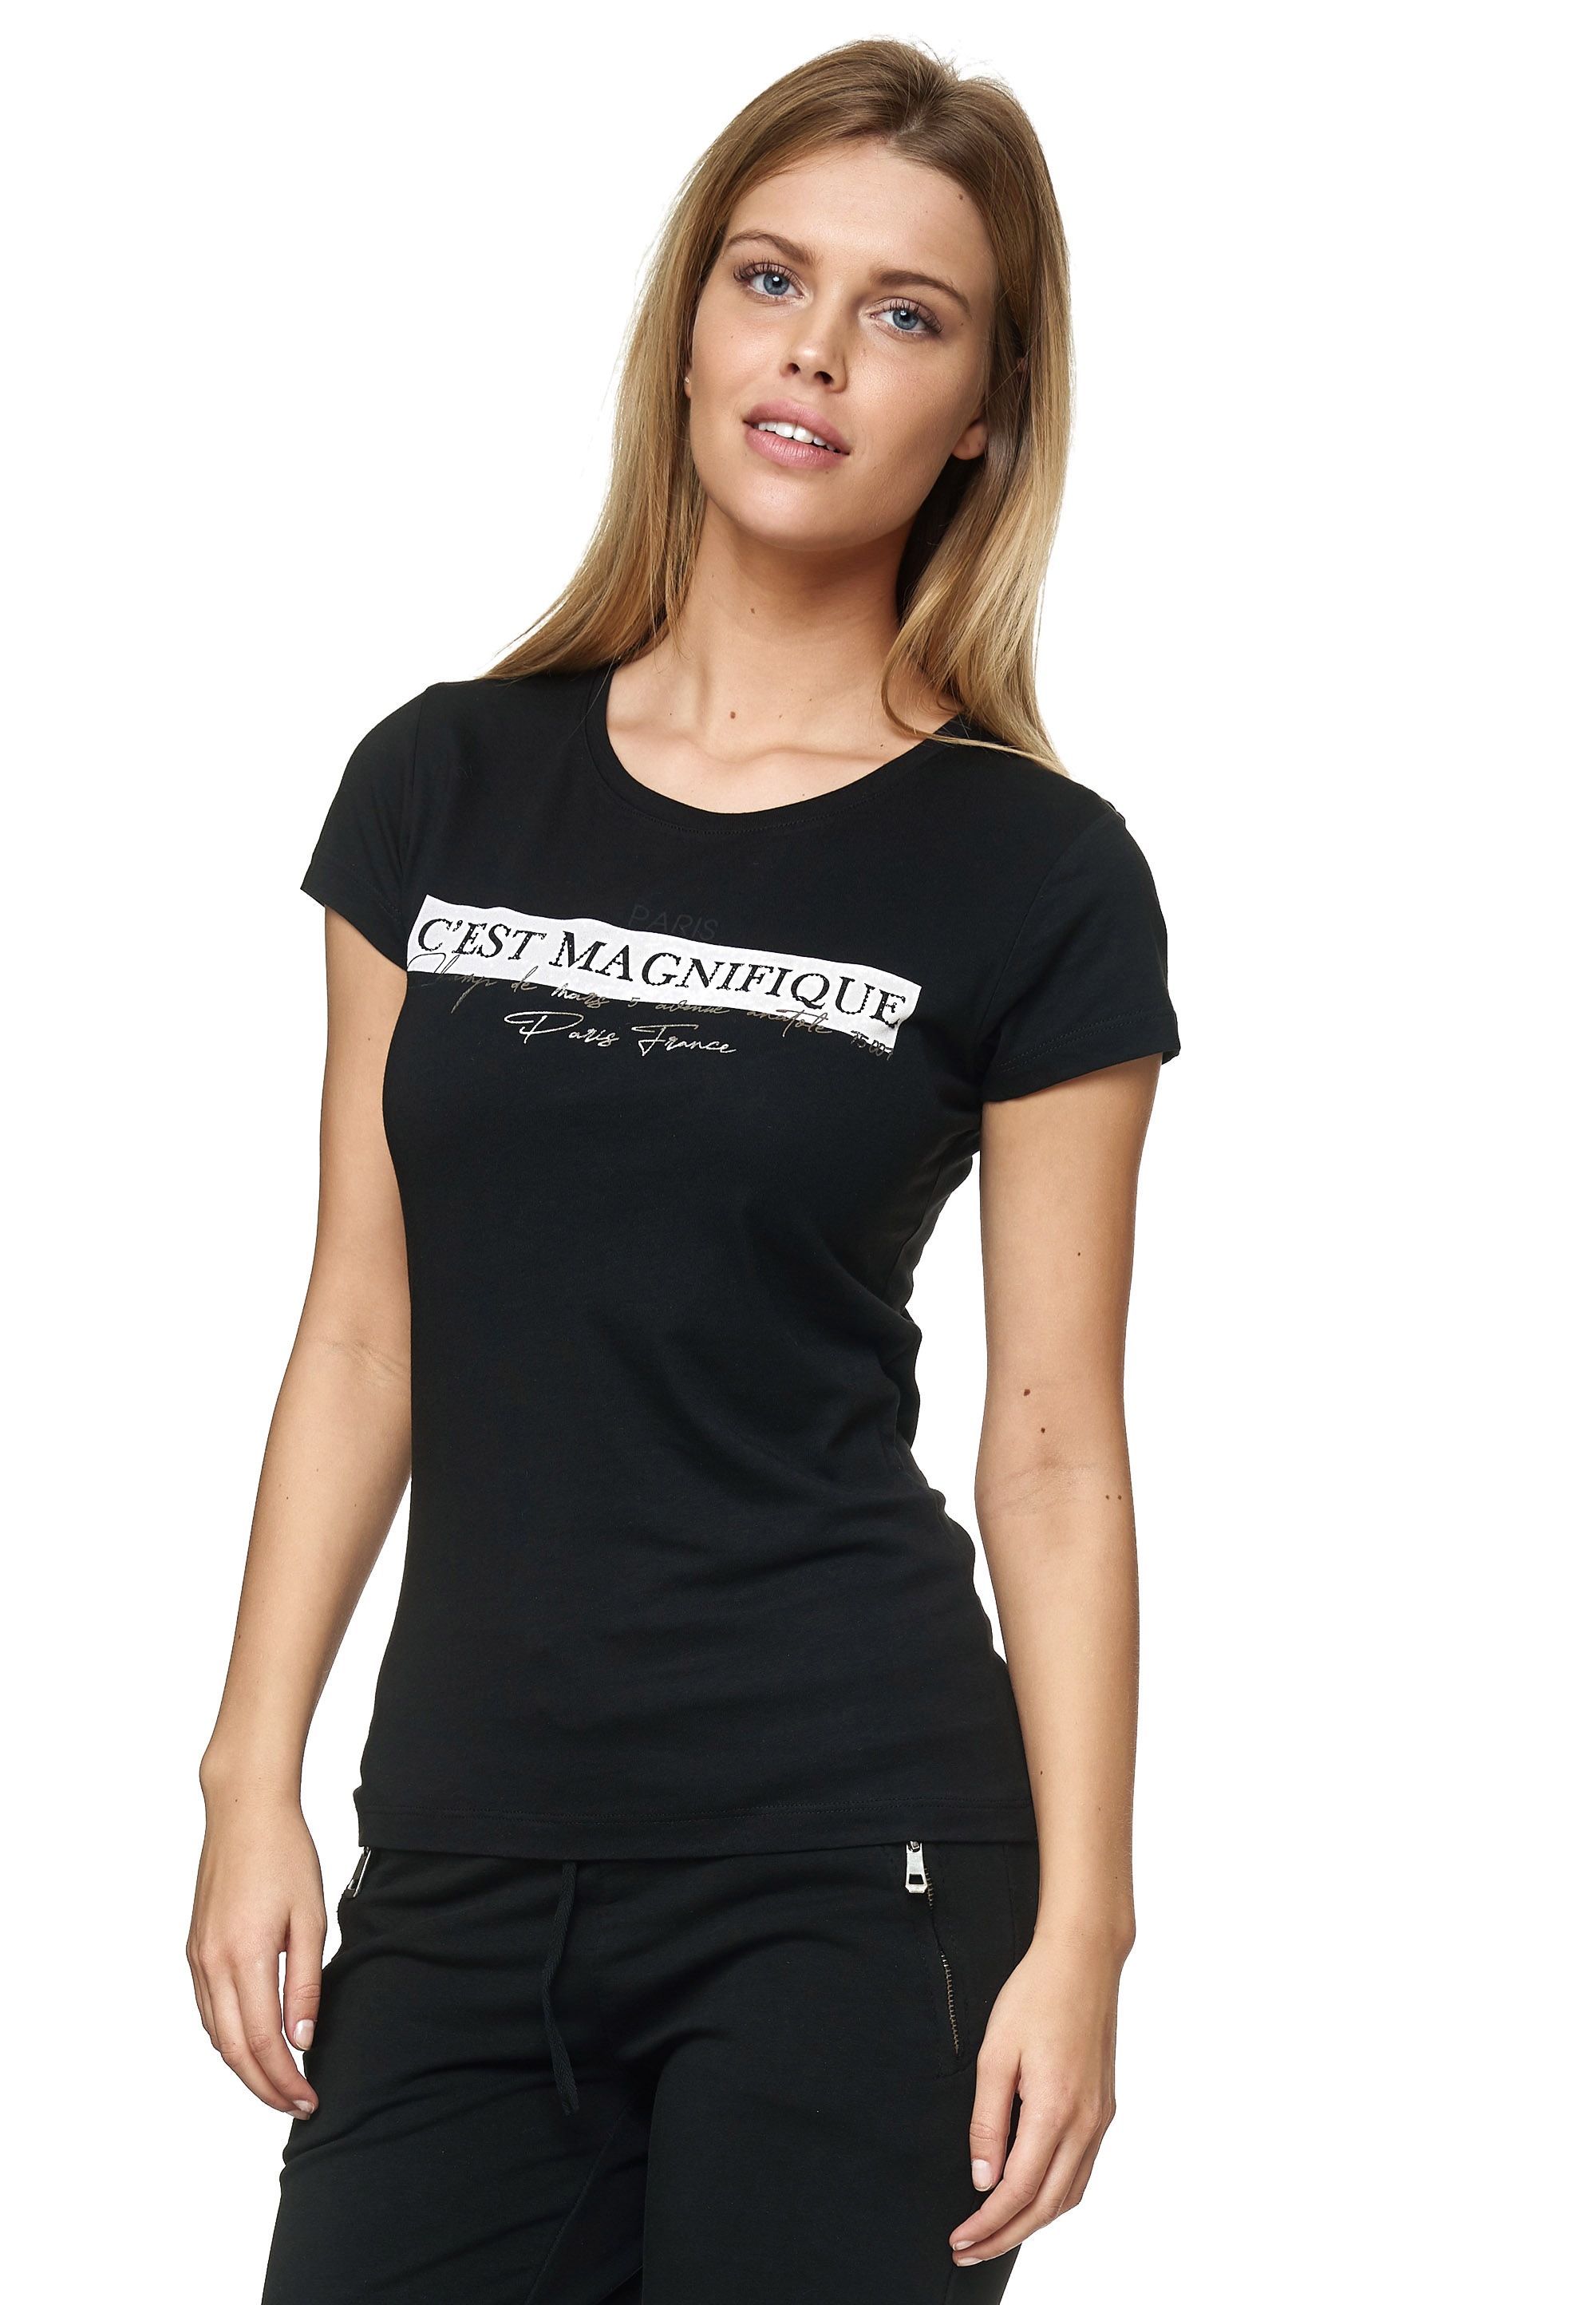 Decay T-Shirt »C´est Magnifique«, mit coolem Frontprint online